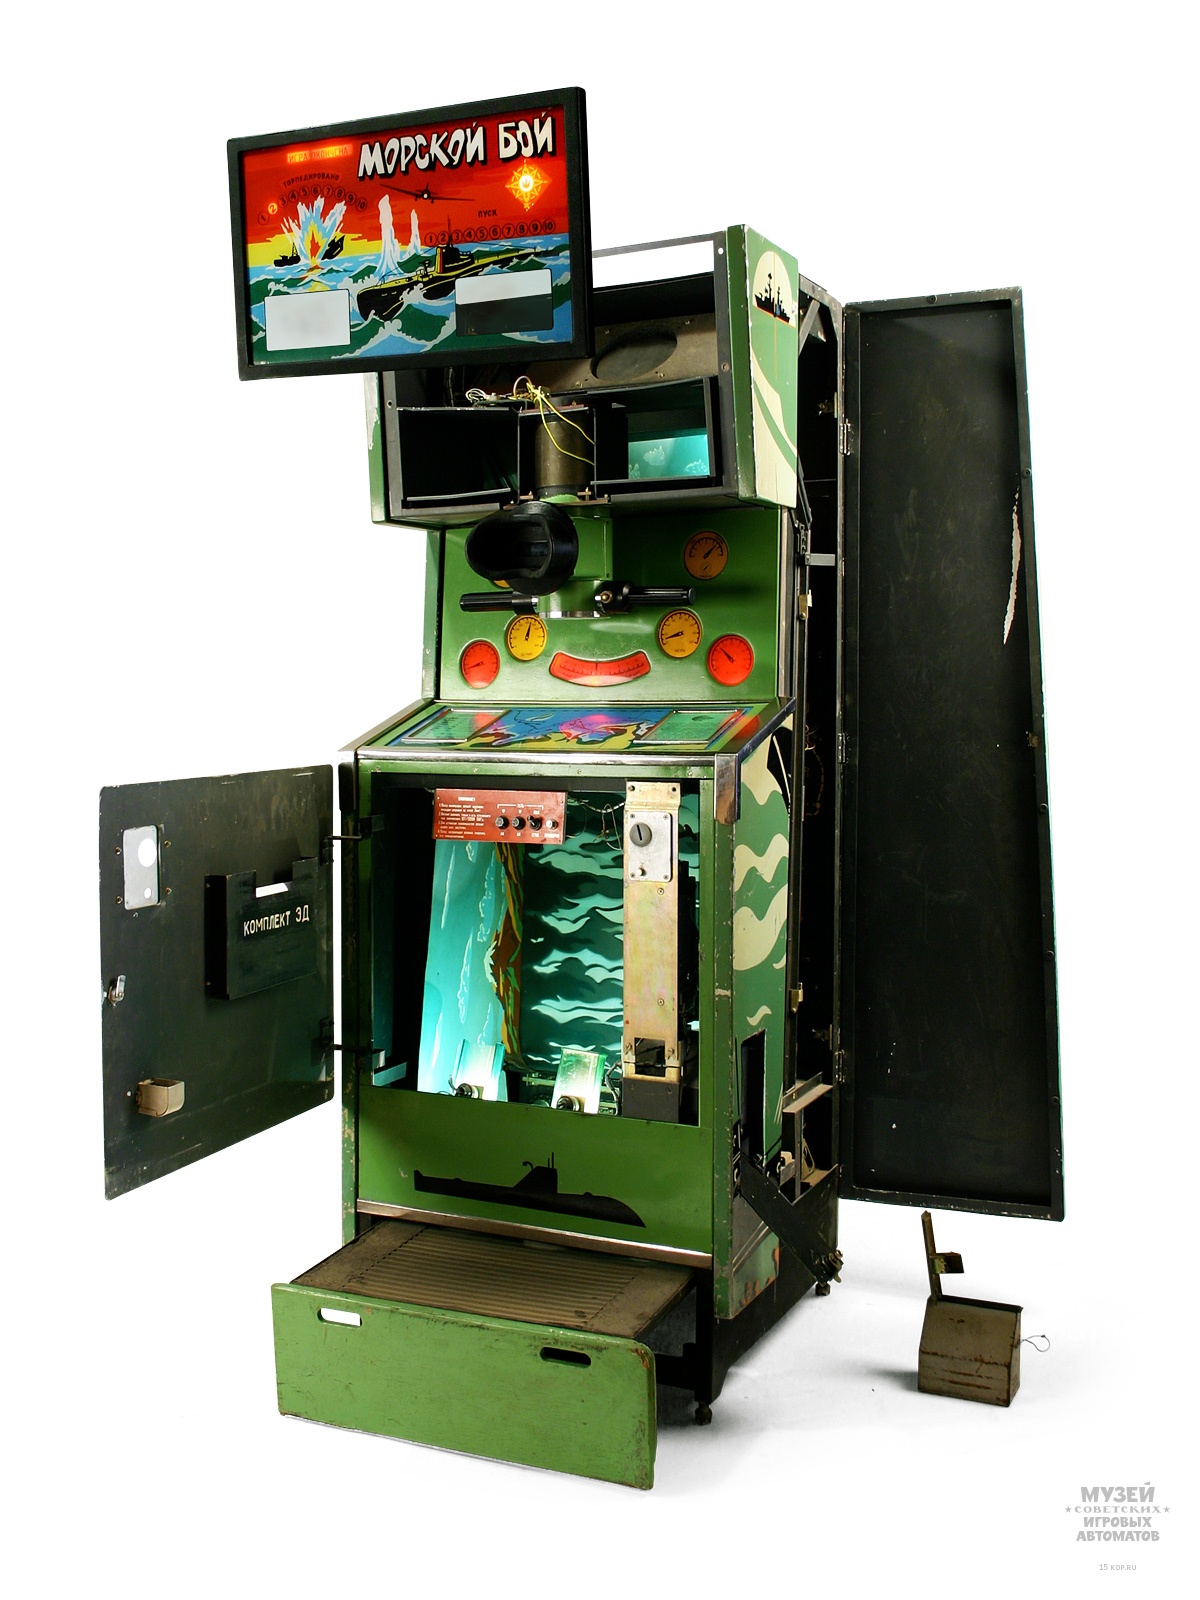 Игровые автоматы: откуда они взялись в СССР и как устроены - 3